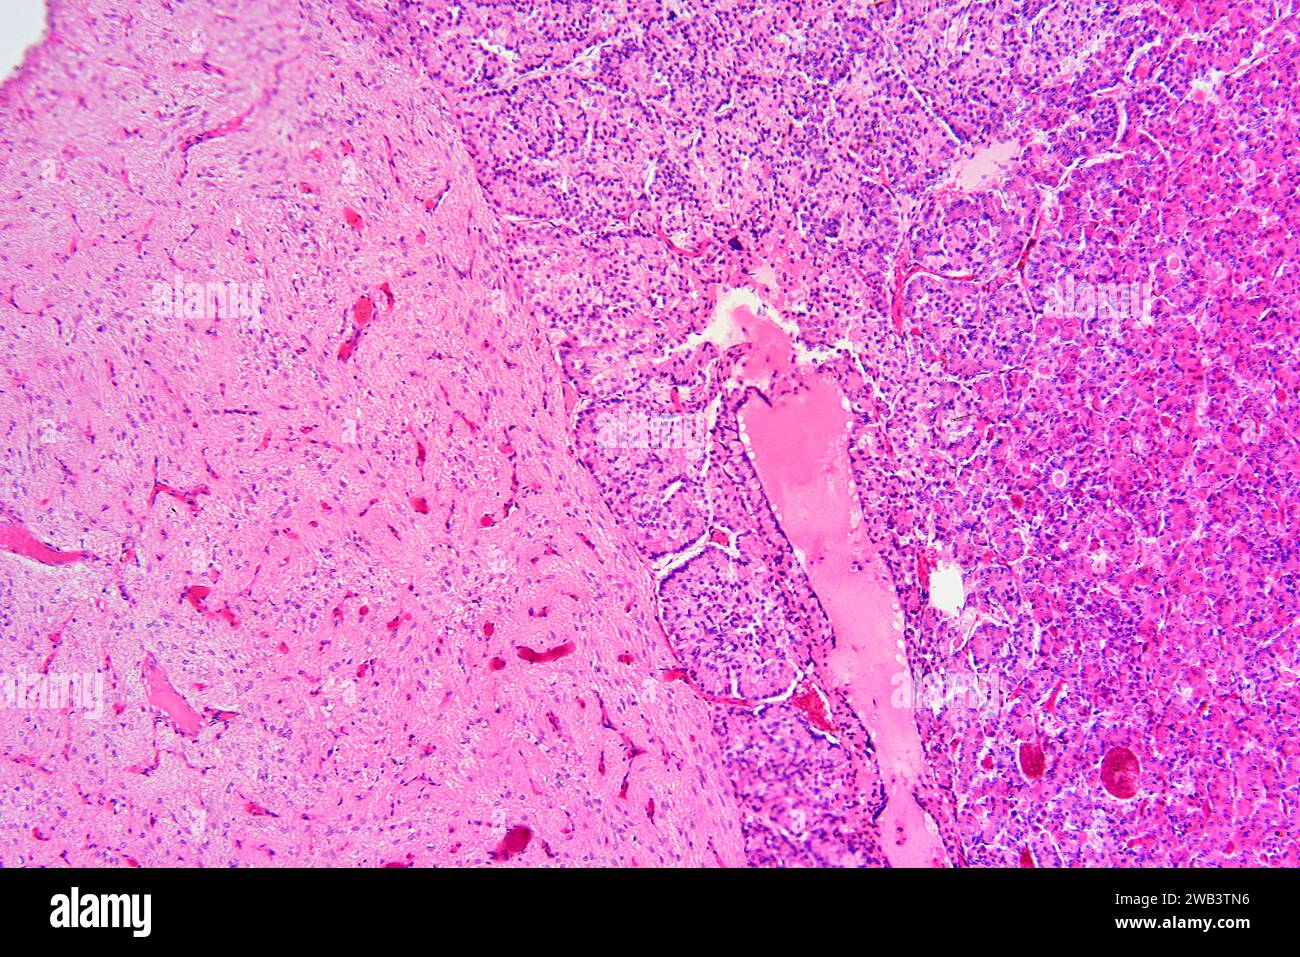 Ipofisi umana o ghiandola pituitaria. X75 a 10 cm di larghezza. Foto Stock